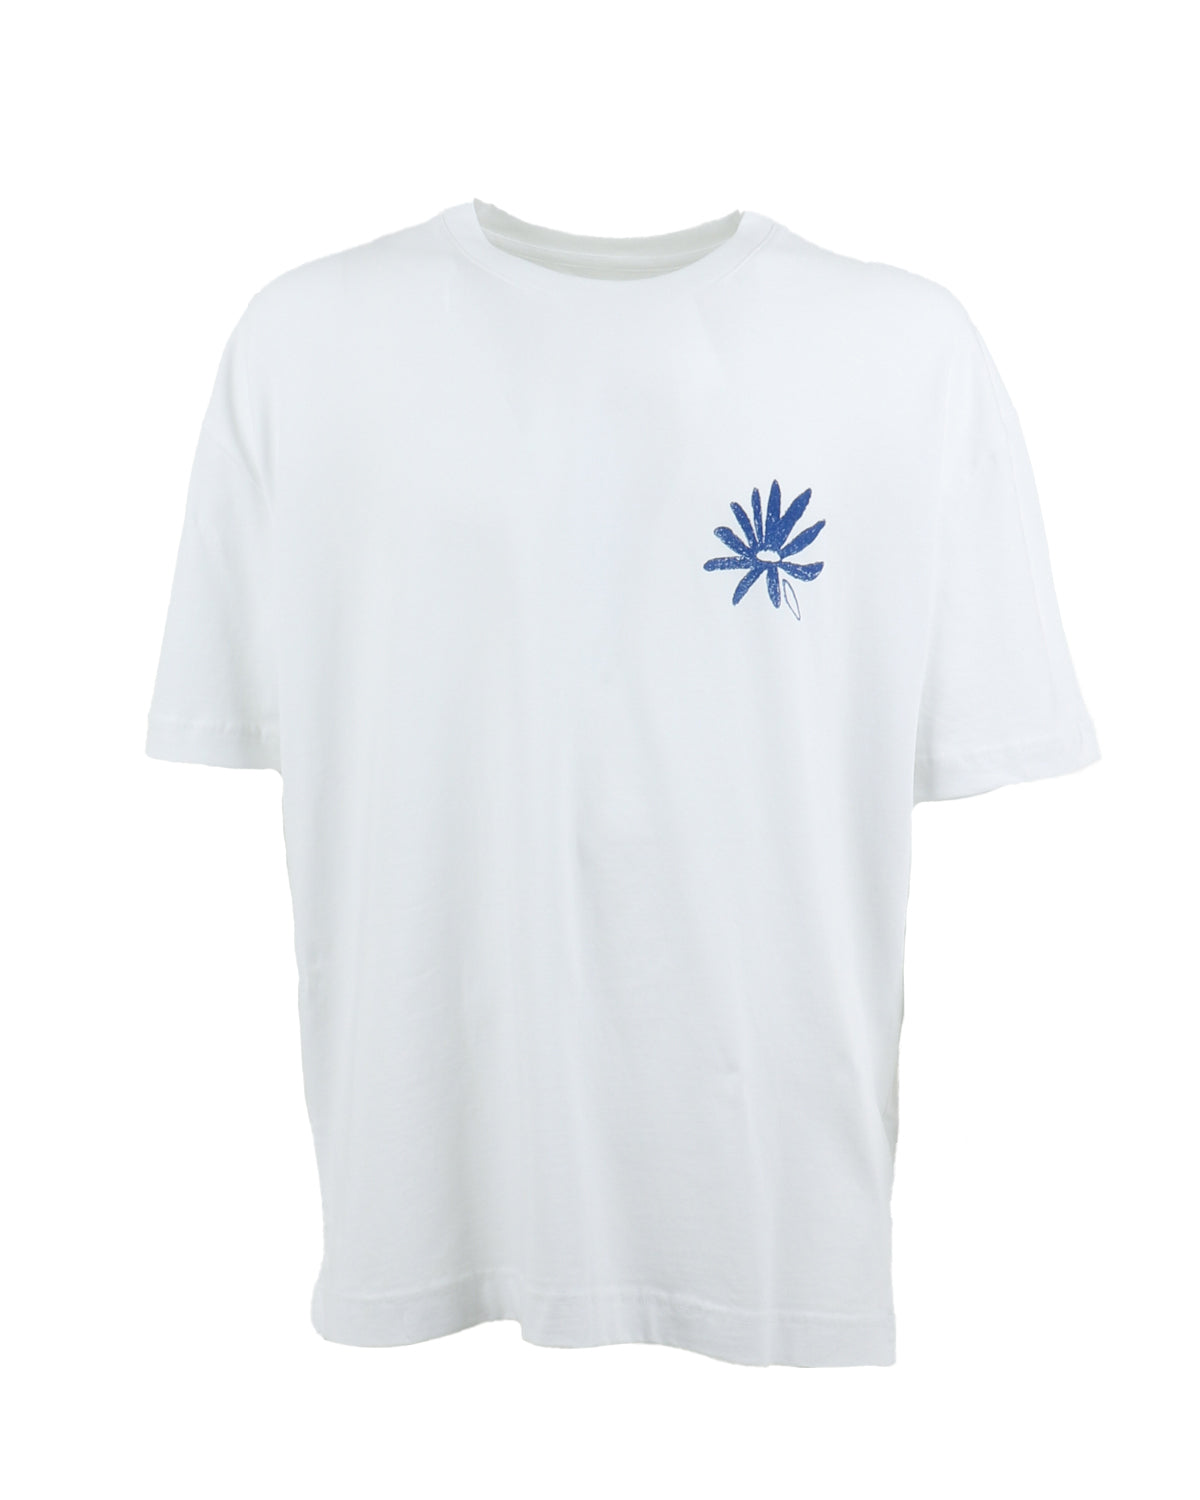 Leaf T-Shirt, white